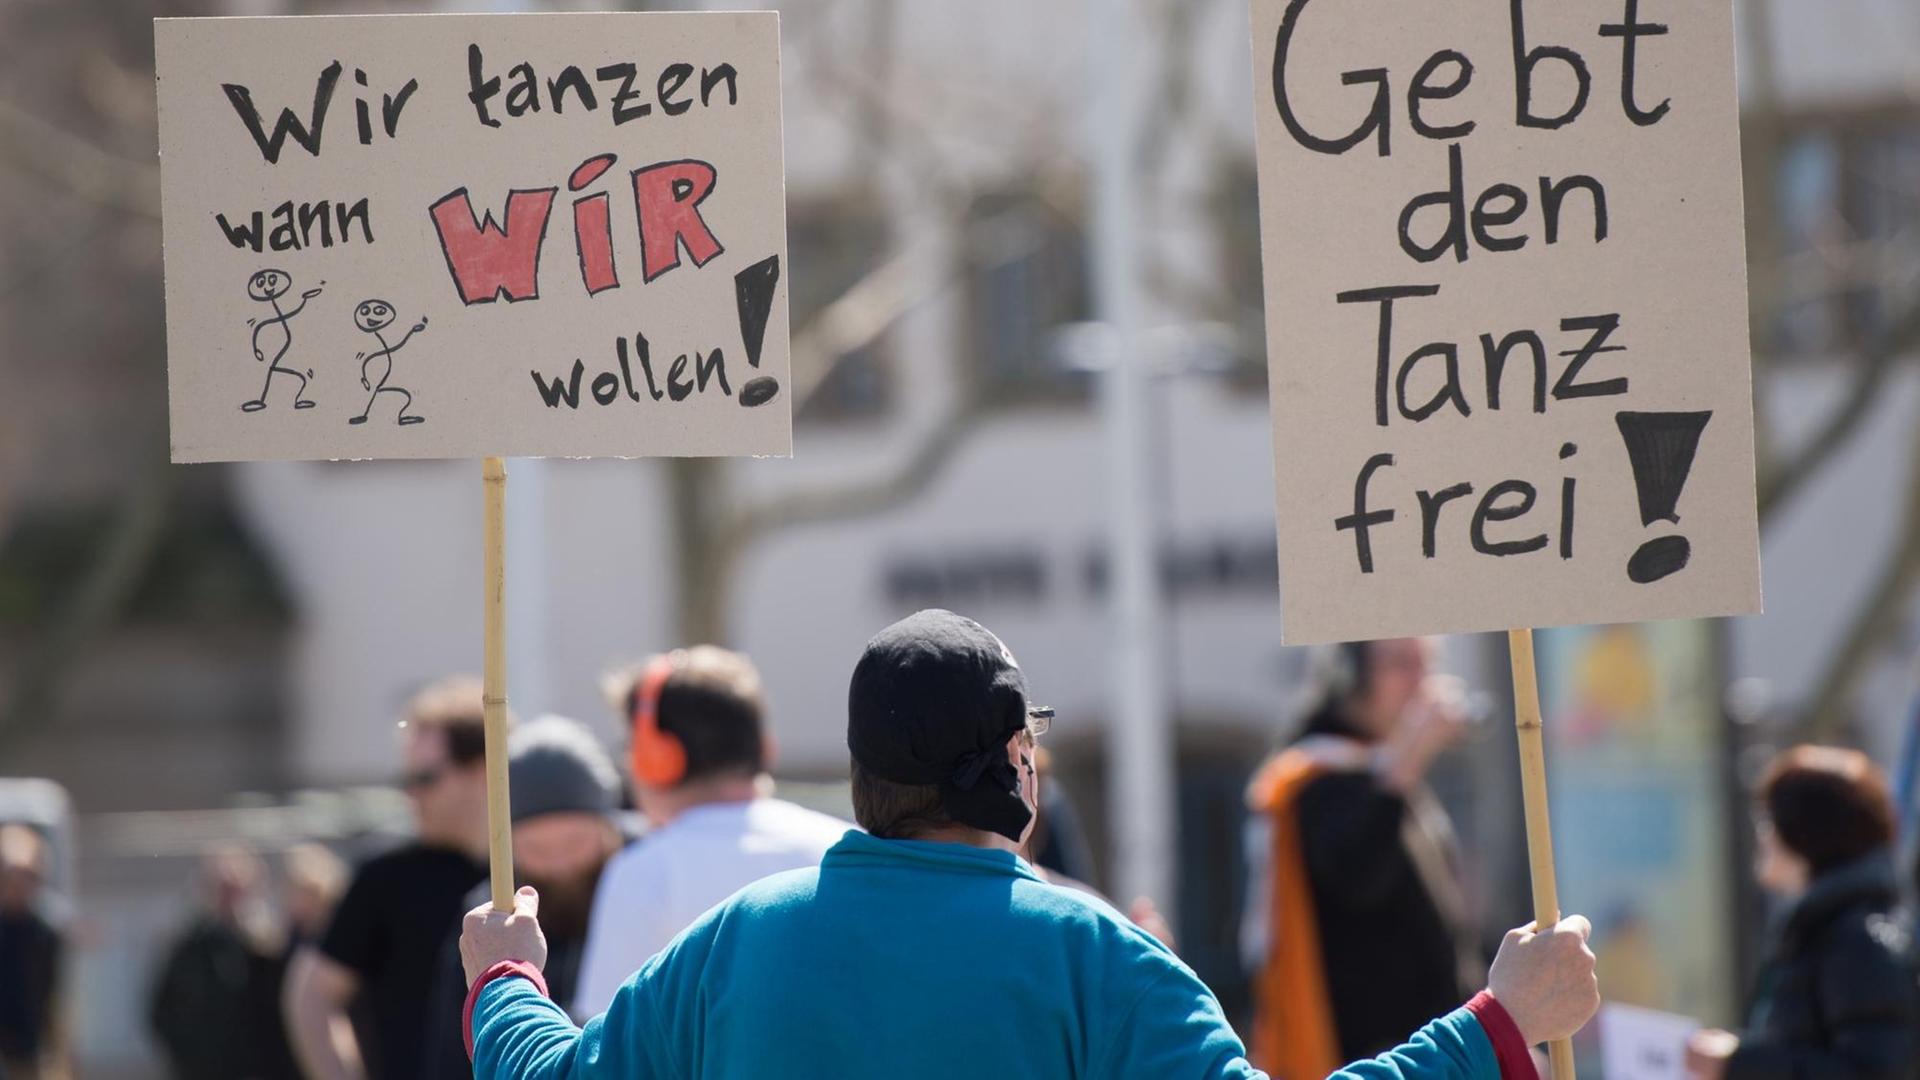 Ein Teilnehmer einer von der Piratenpartei organisierten Versammlung gegen das Tanzverbot hält am 03.04.2015 in Stuttgart (Baden-Württemberg) Schilder mit der Aufschrift "Wir tanzen wann wir wollen!" und "Gebt den Tanz frei". Aus Protest gegen das Tanzverbot hörten die Versammelten Musik über Kopfhörer, einige tanzten dazu.